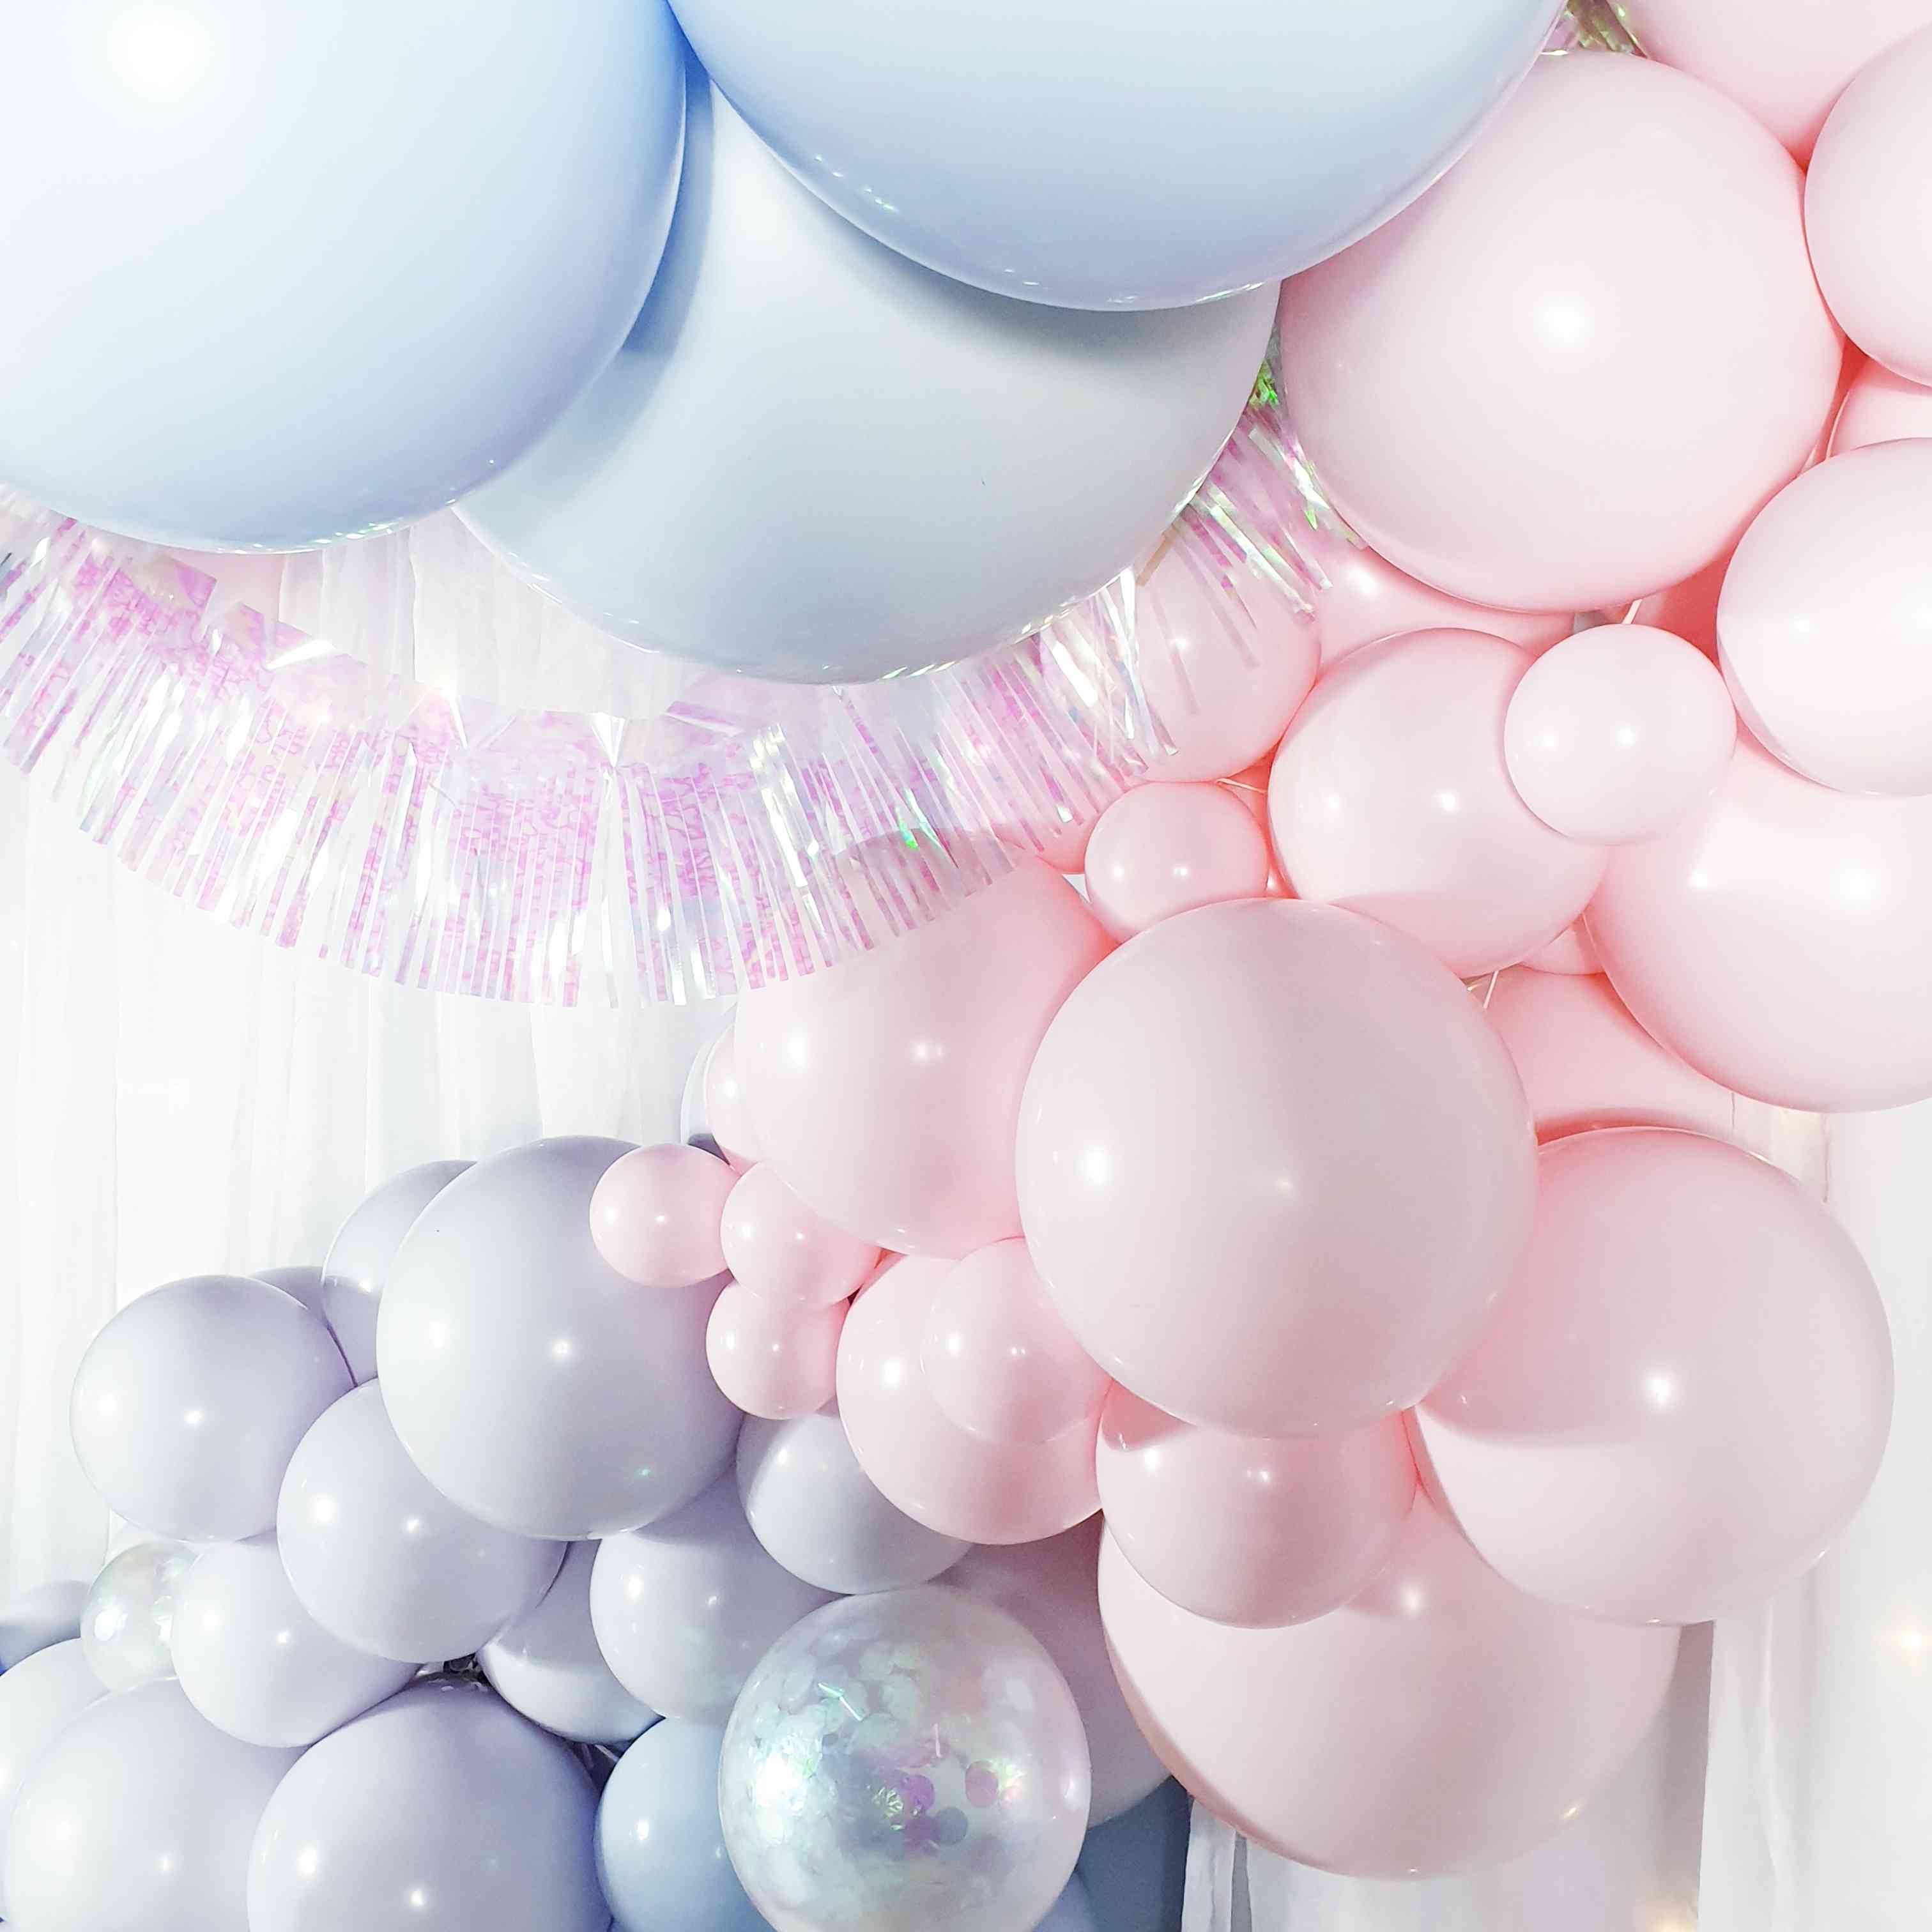 Ballon rose bonbon métallisé – Décoration de fête – Monstres des fêtes